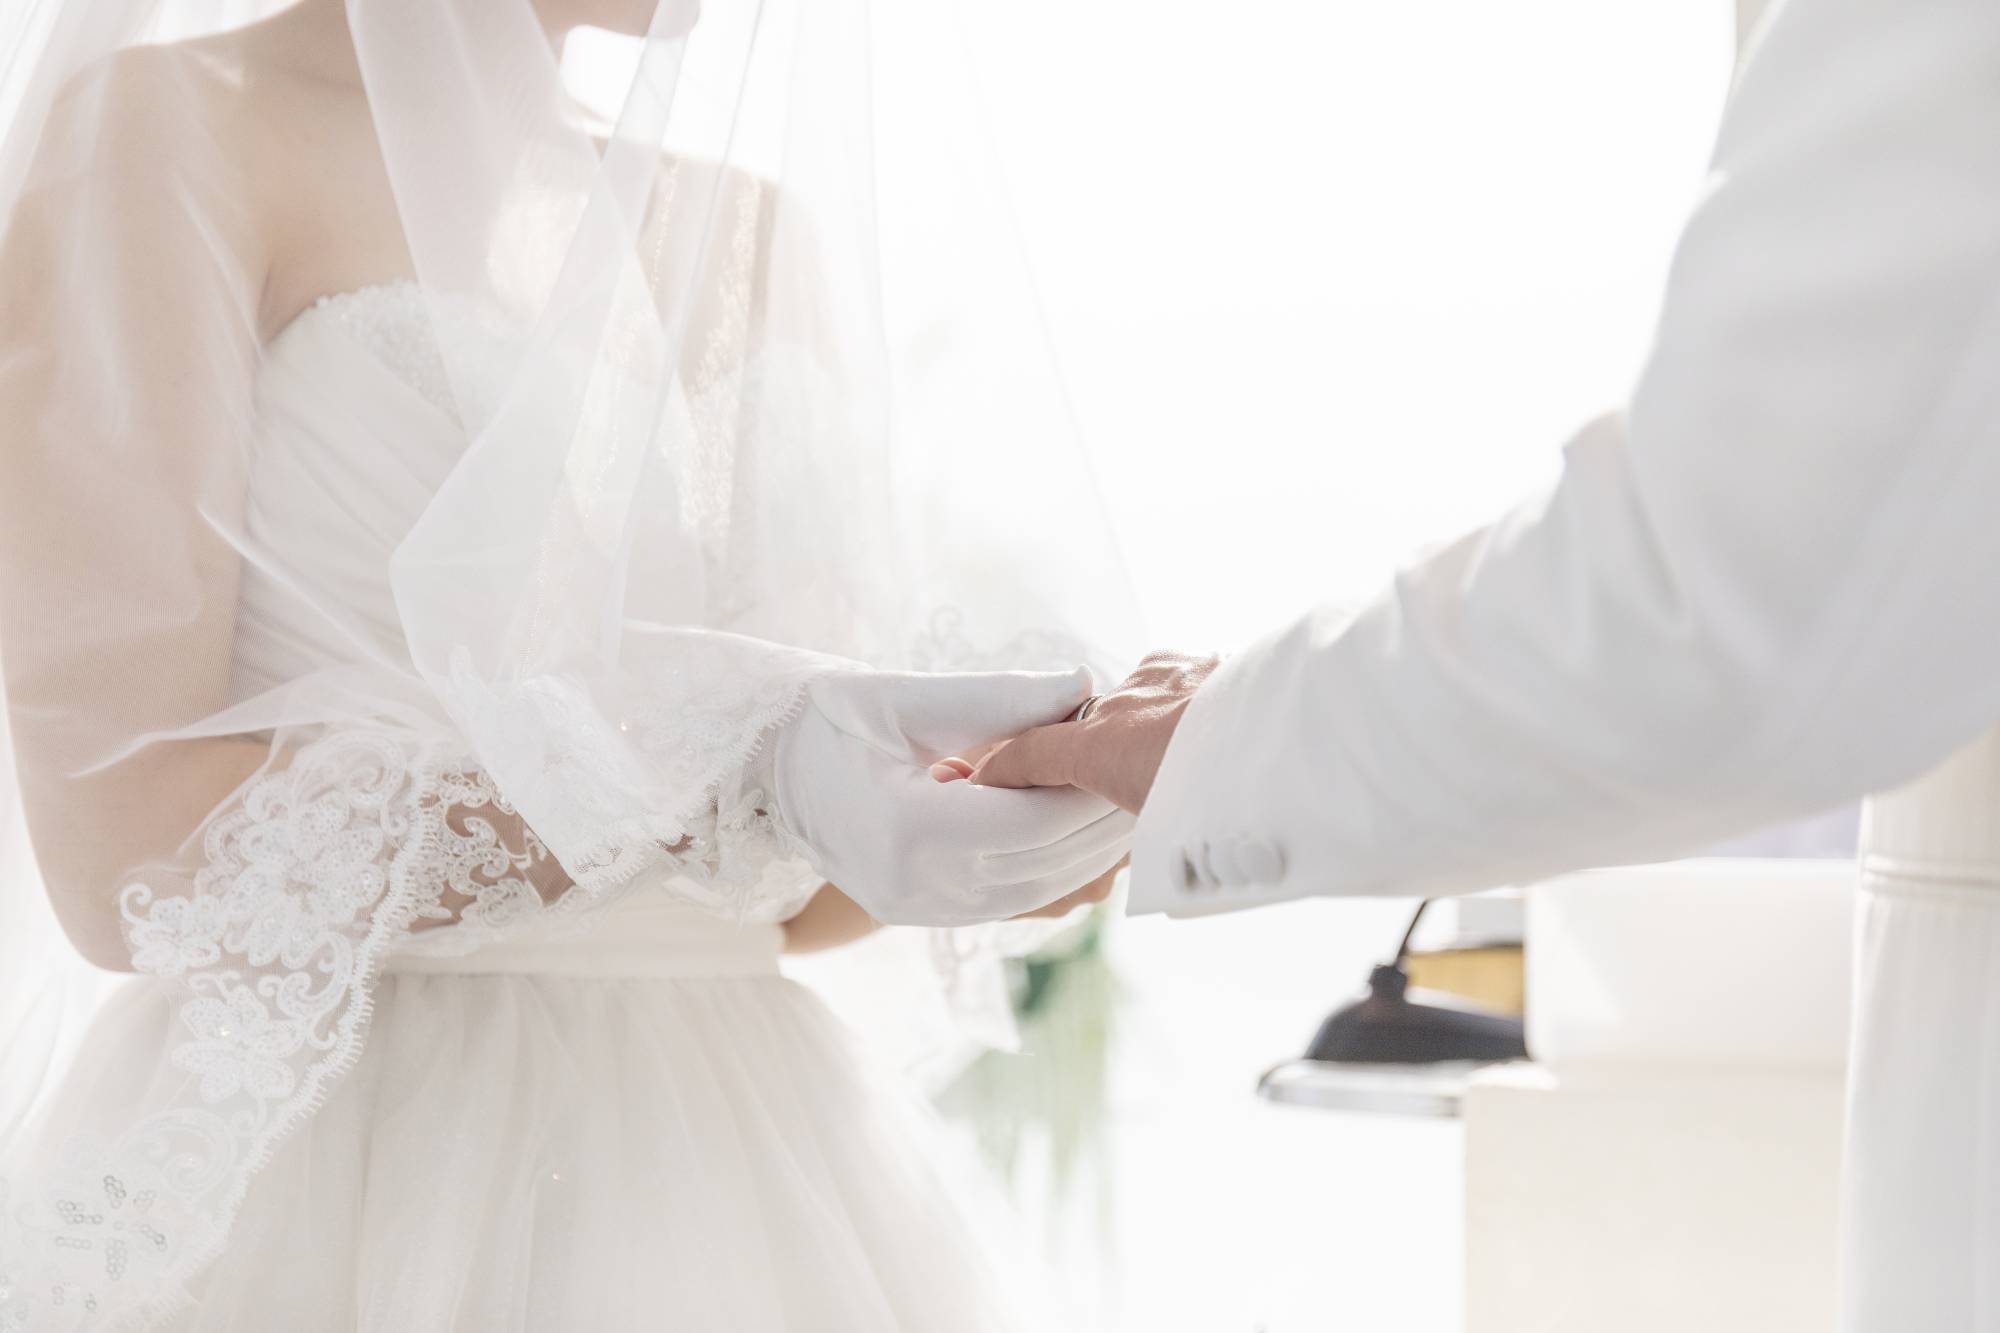 Lý do thực sự khiến giới trẻ Nhật Bản không muốn kết hôn